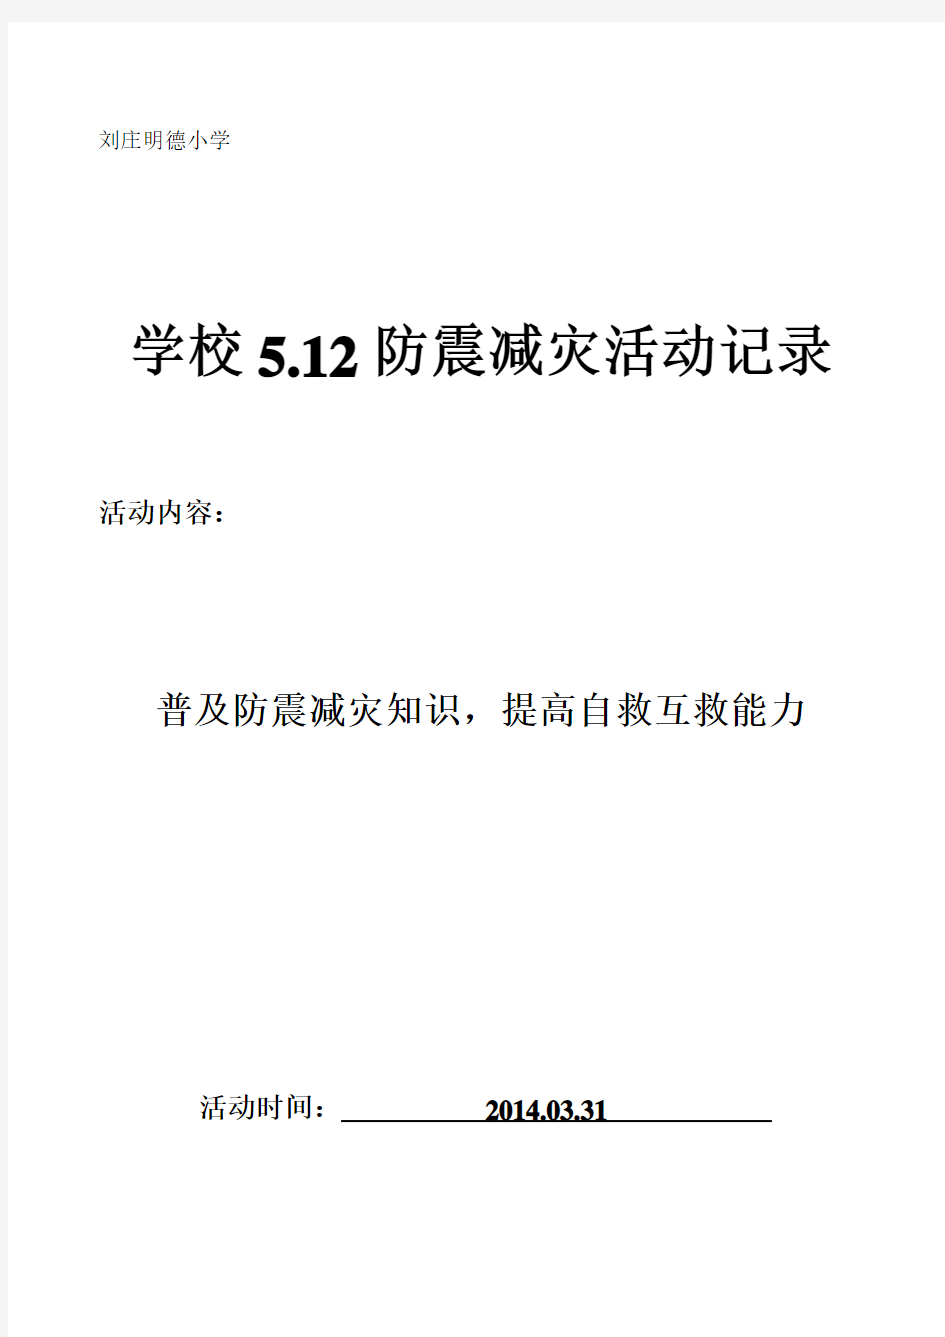 2014年刘庄明德小学5.12防震减灾教育活动